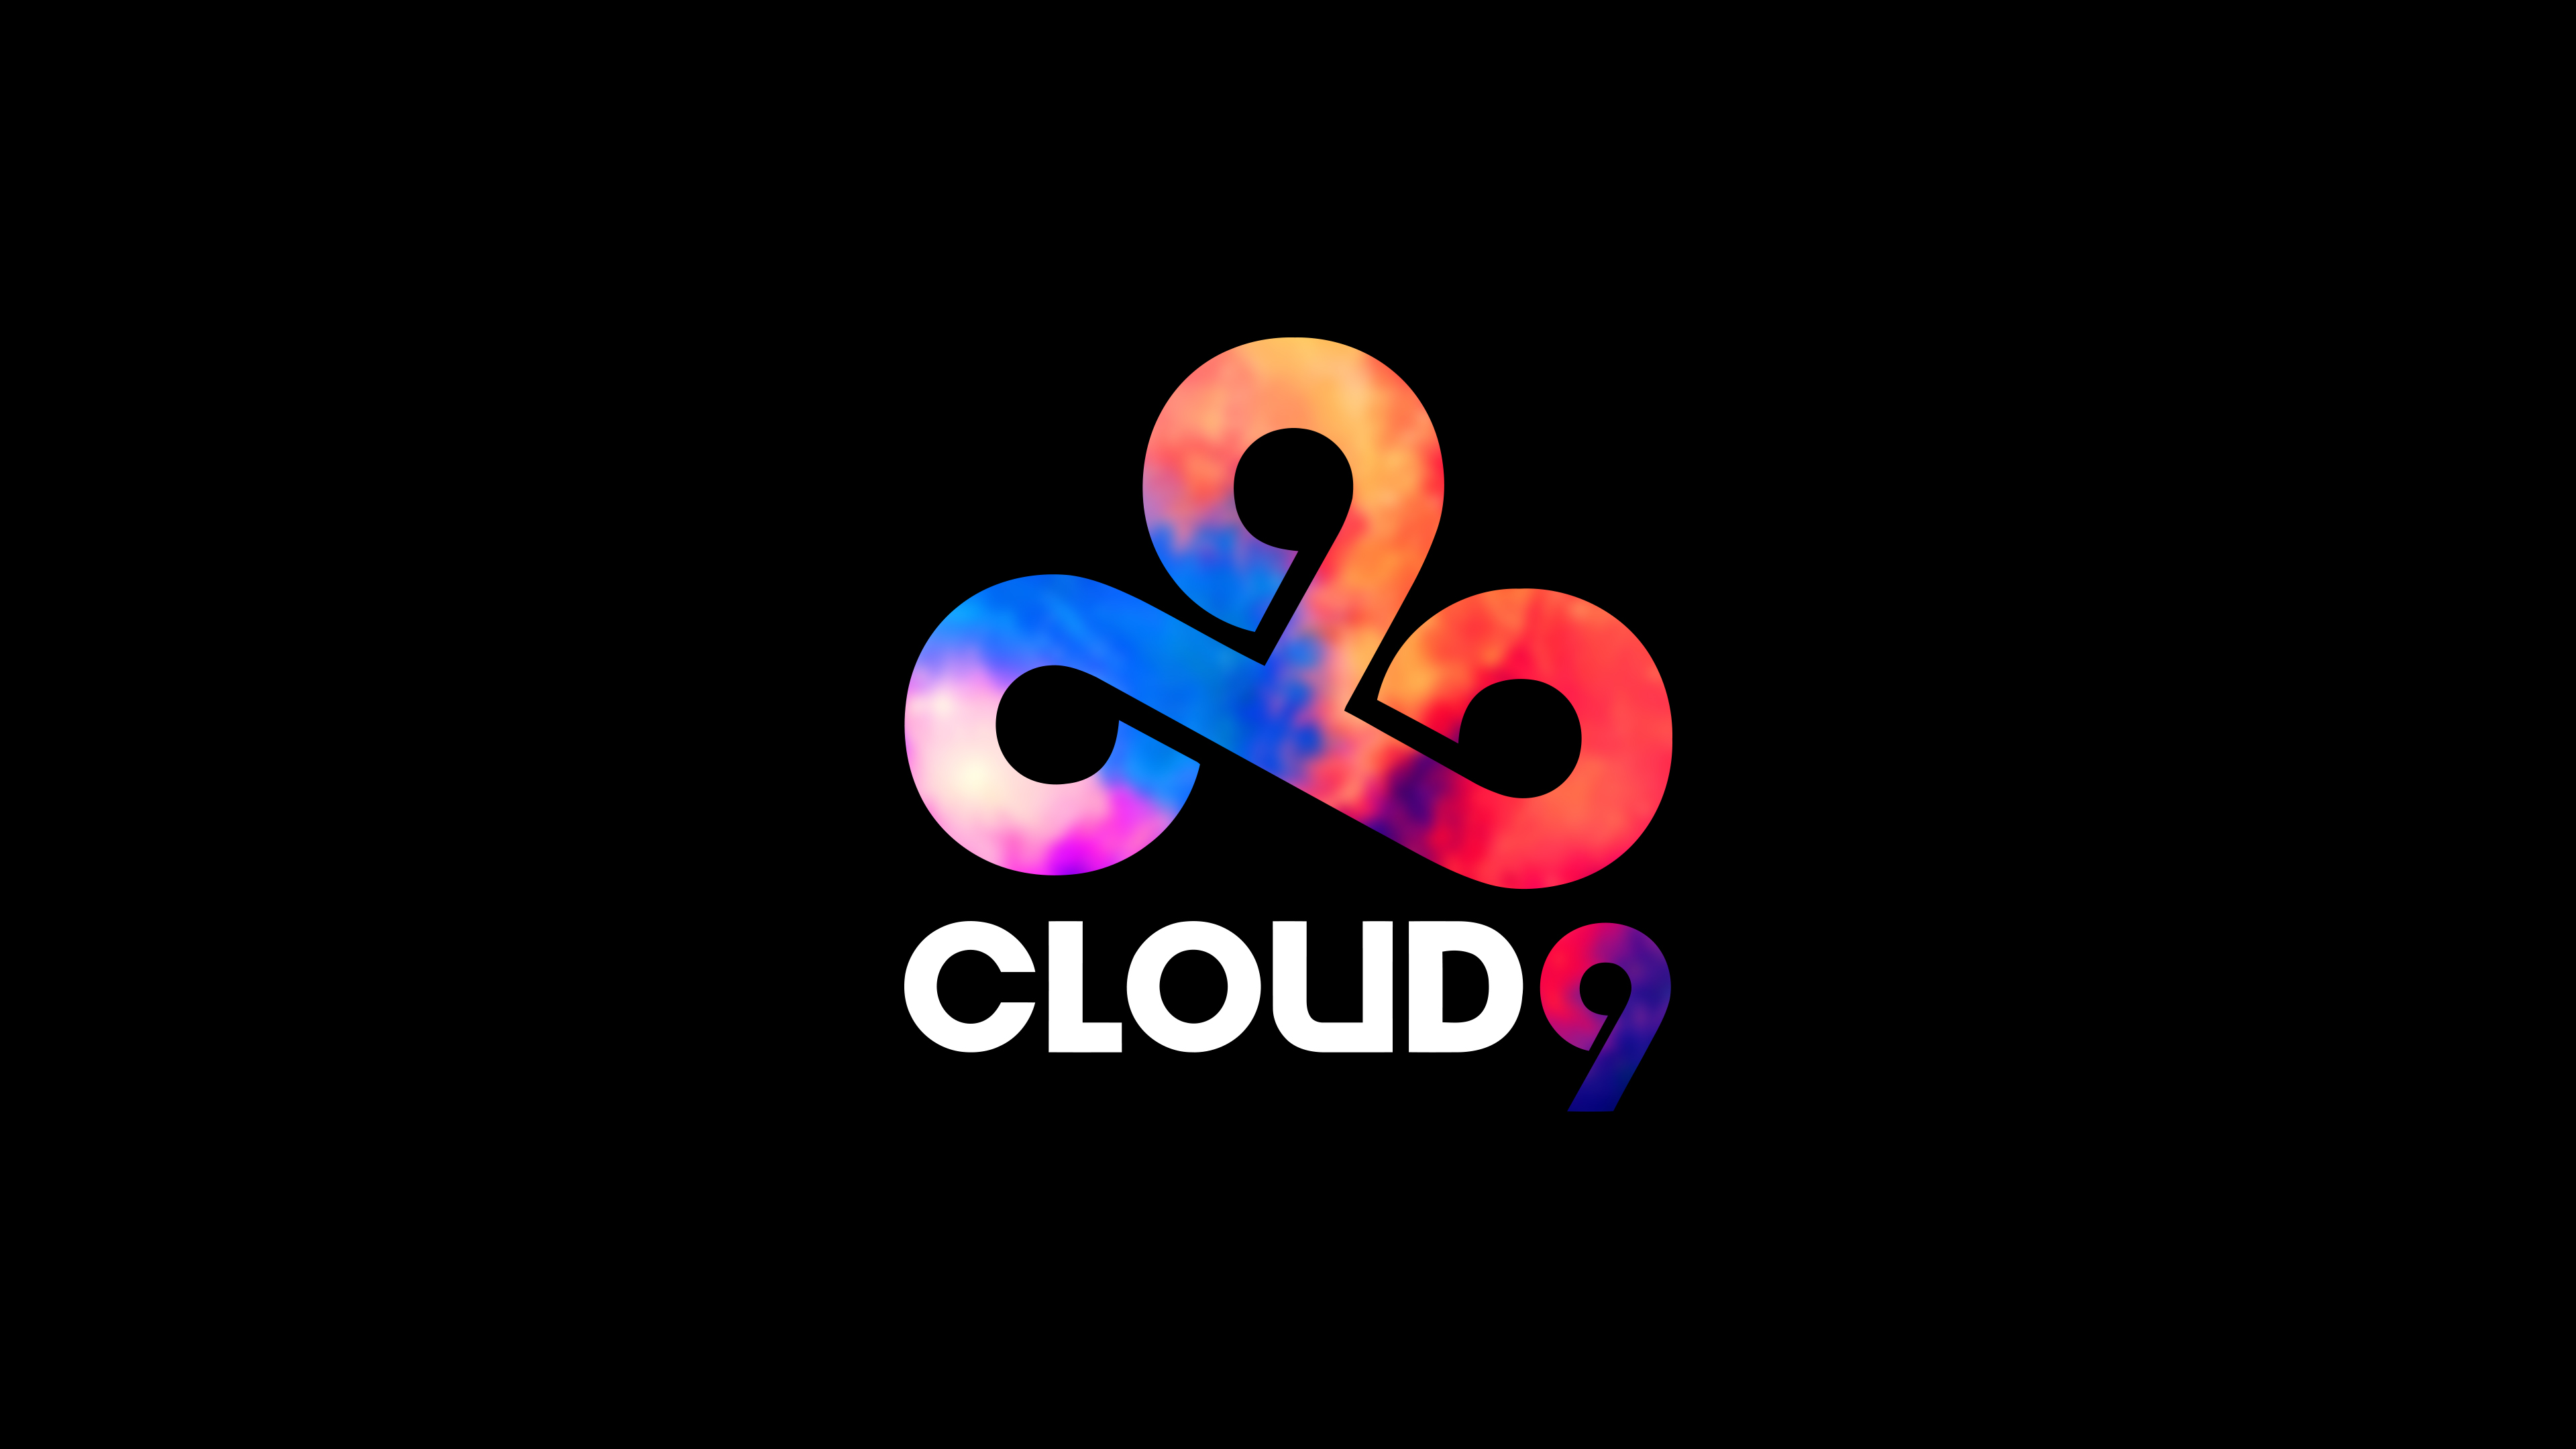 Клауд тим. Клауд 9. Cloud9 на аву. Cloud9 эмблема. Cloud9 аватарка.